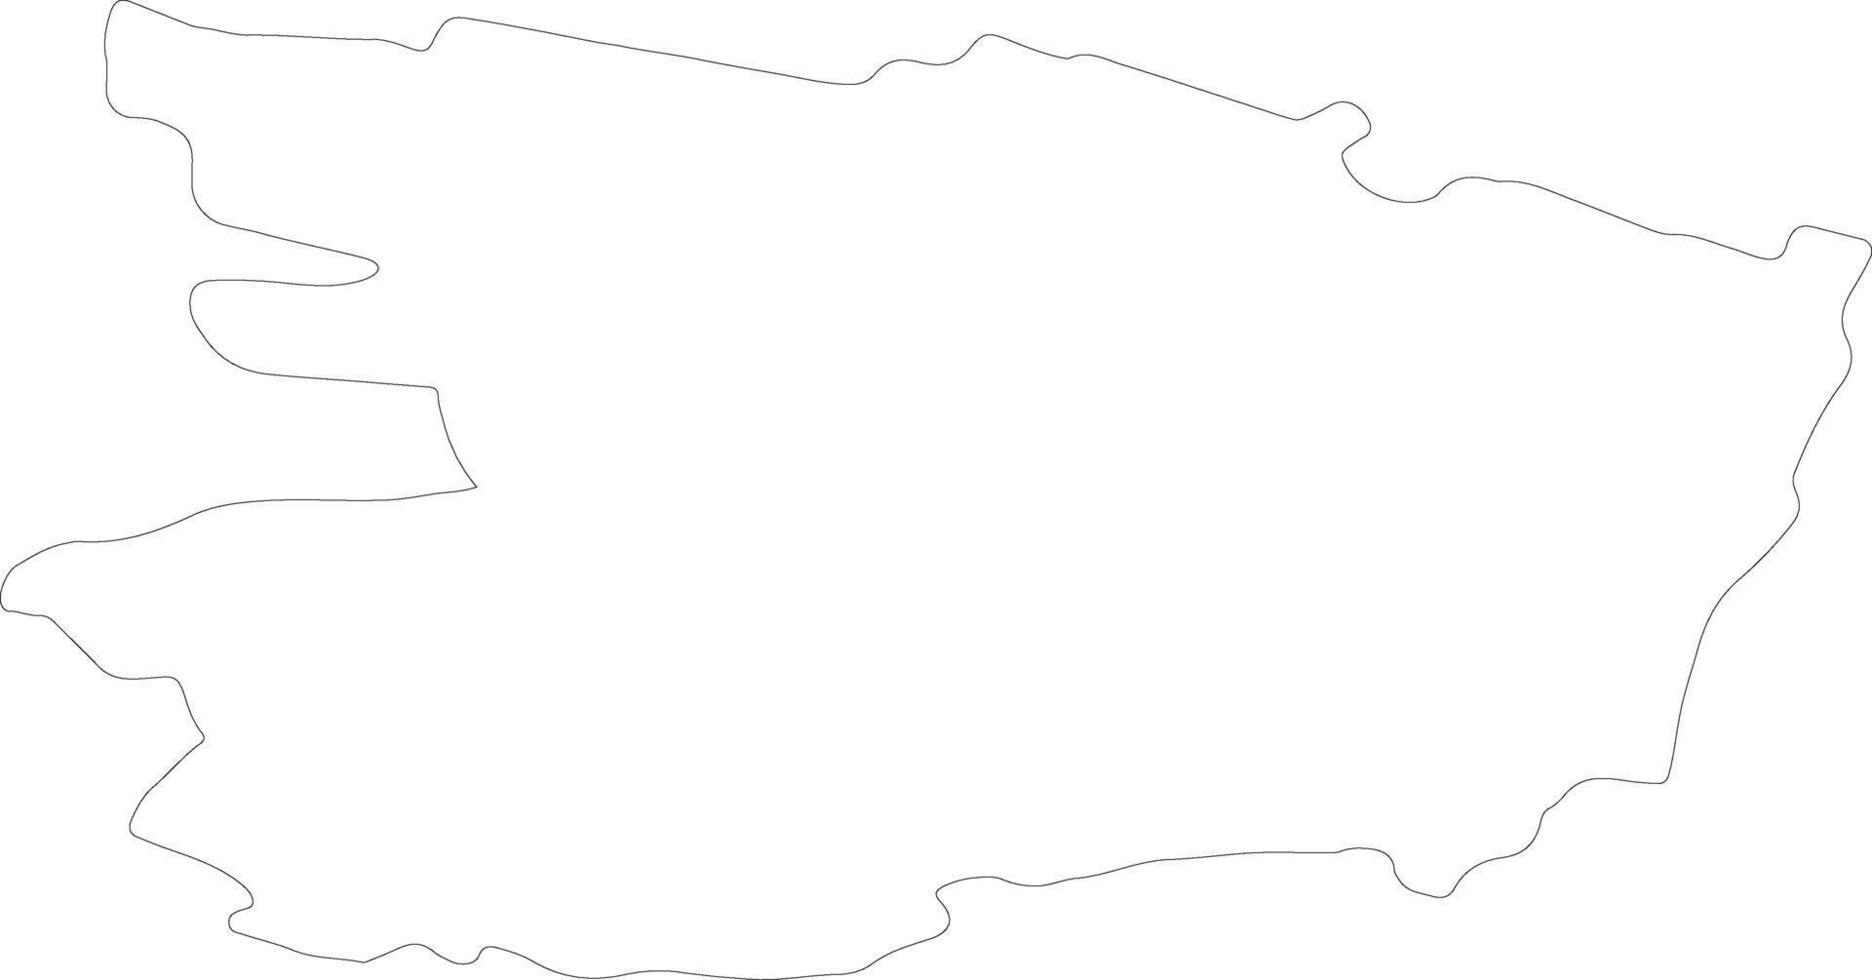 Maine-et-Loire France outline map vector